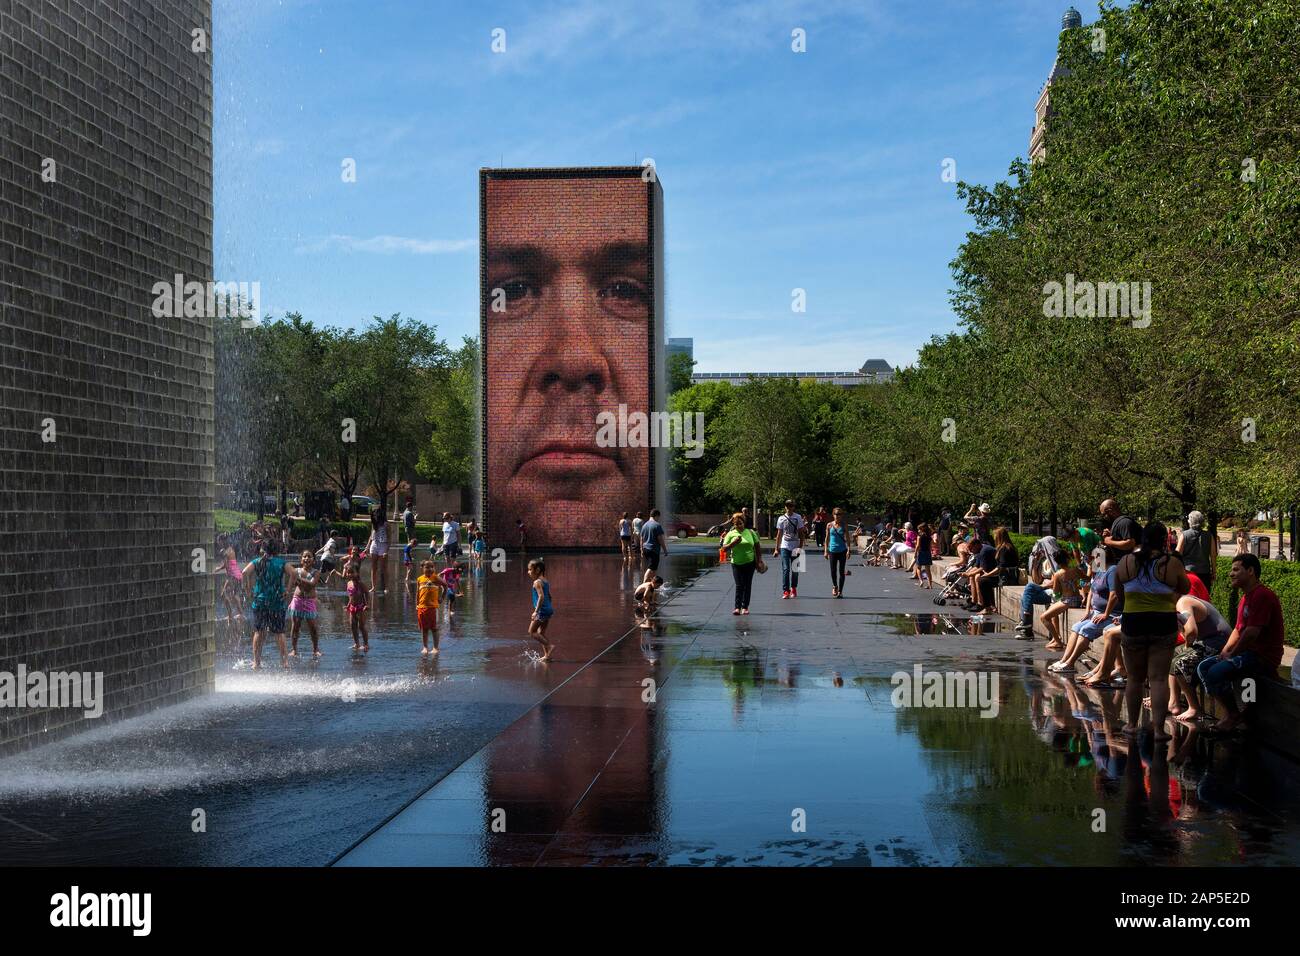 Chicago, Illinois, Stati Uniti d'America - 1 Luglio 2014: persone rinfrescante presso la Fontana di corona in un giorno di estate, il Millennium Park della città di Chicago. Foto Stock